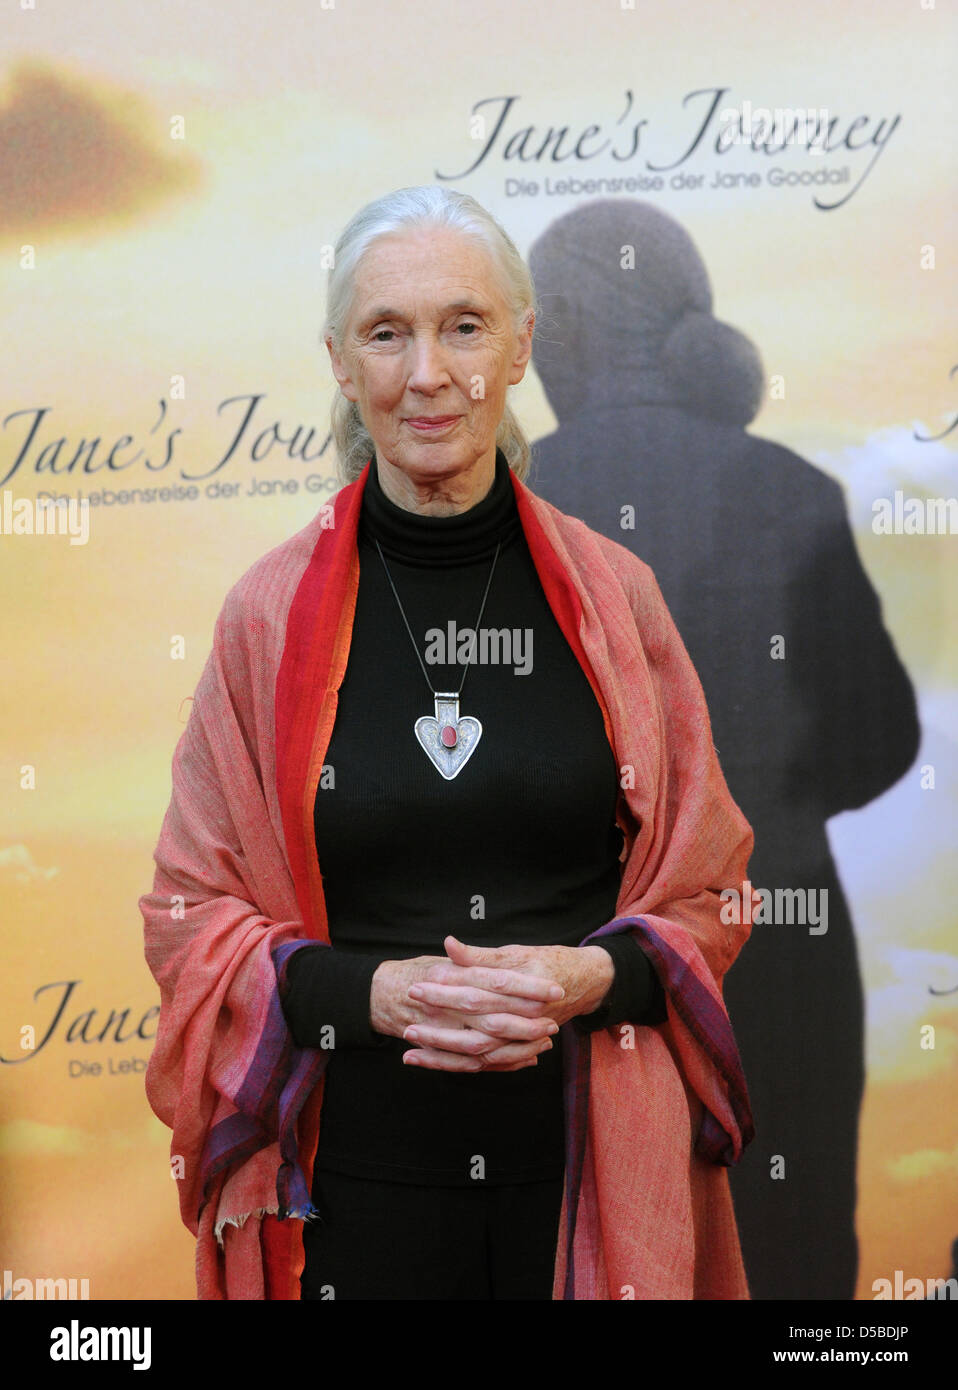 Wissenschaftlerin Jane Goodall bei der Premiere des Films "Janes Journey" in Berlin, Deutschland, 26. August 2010. 2. September 2010 soll der Kinostart des Films, die Goodalls Leben darstellt. Foto: SOEREN STACHE Stockfoto